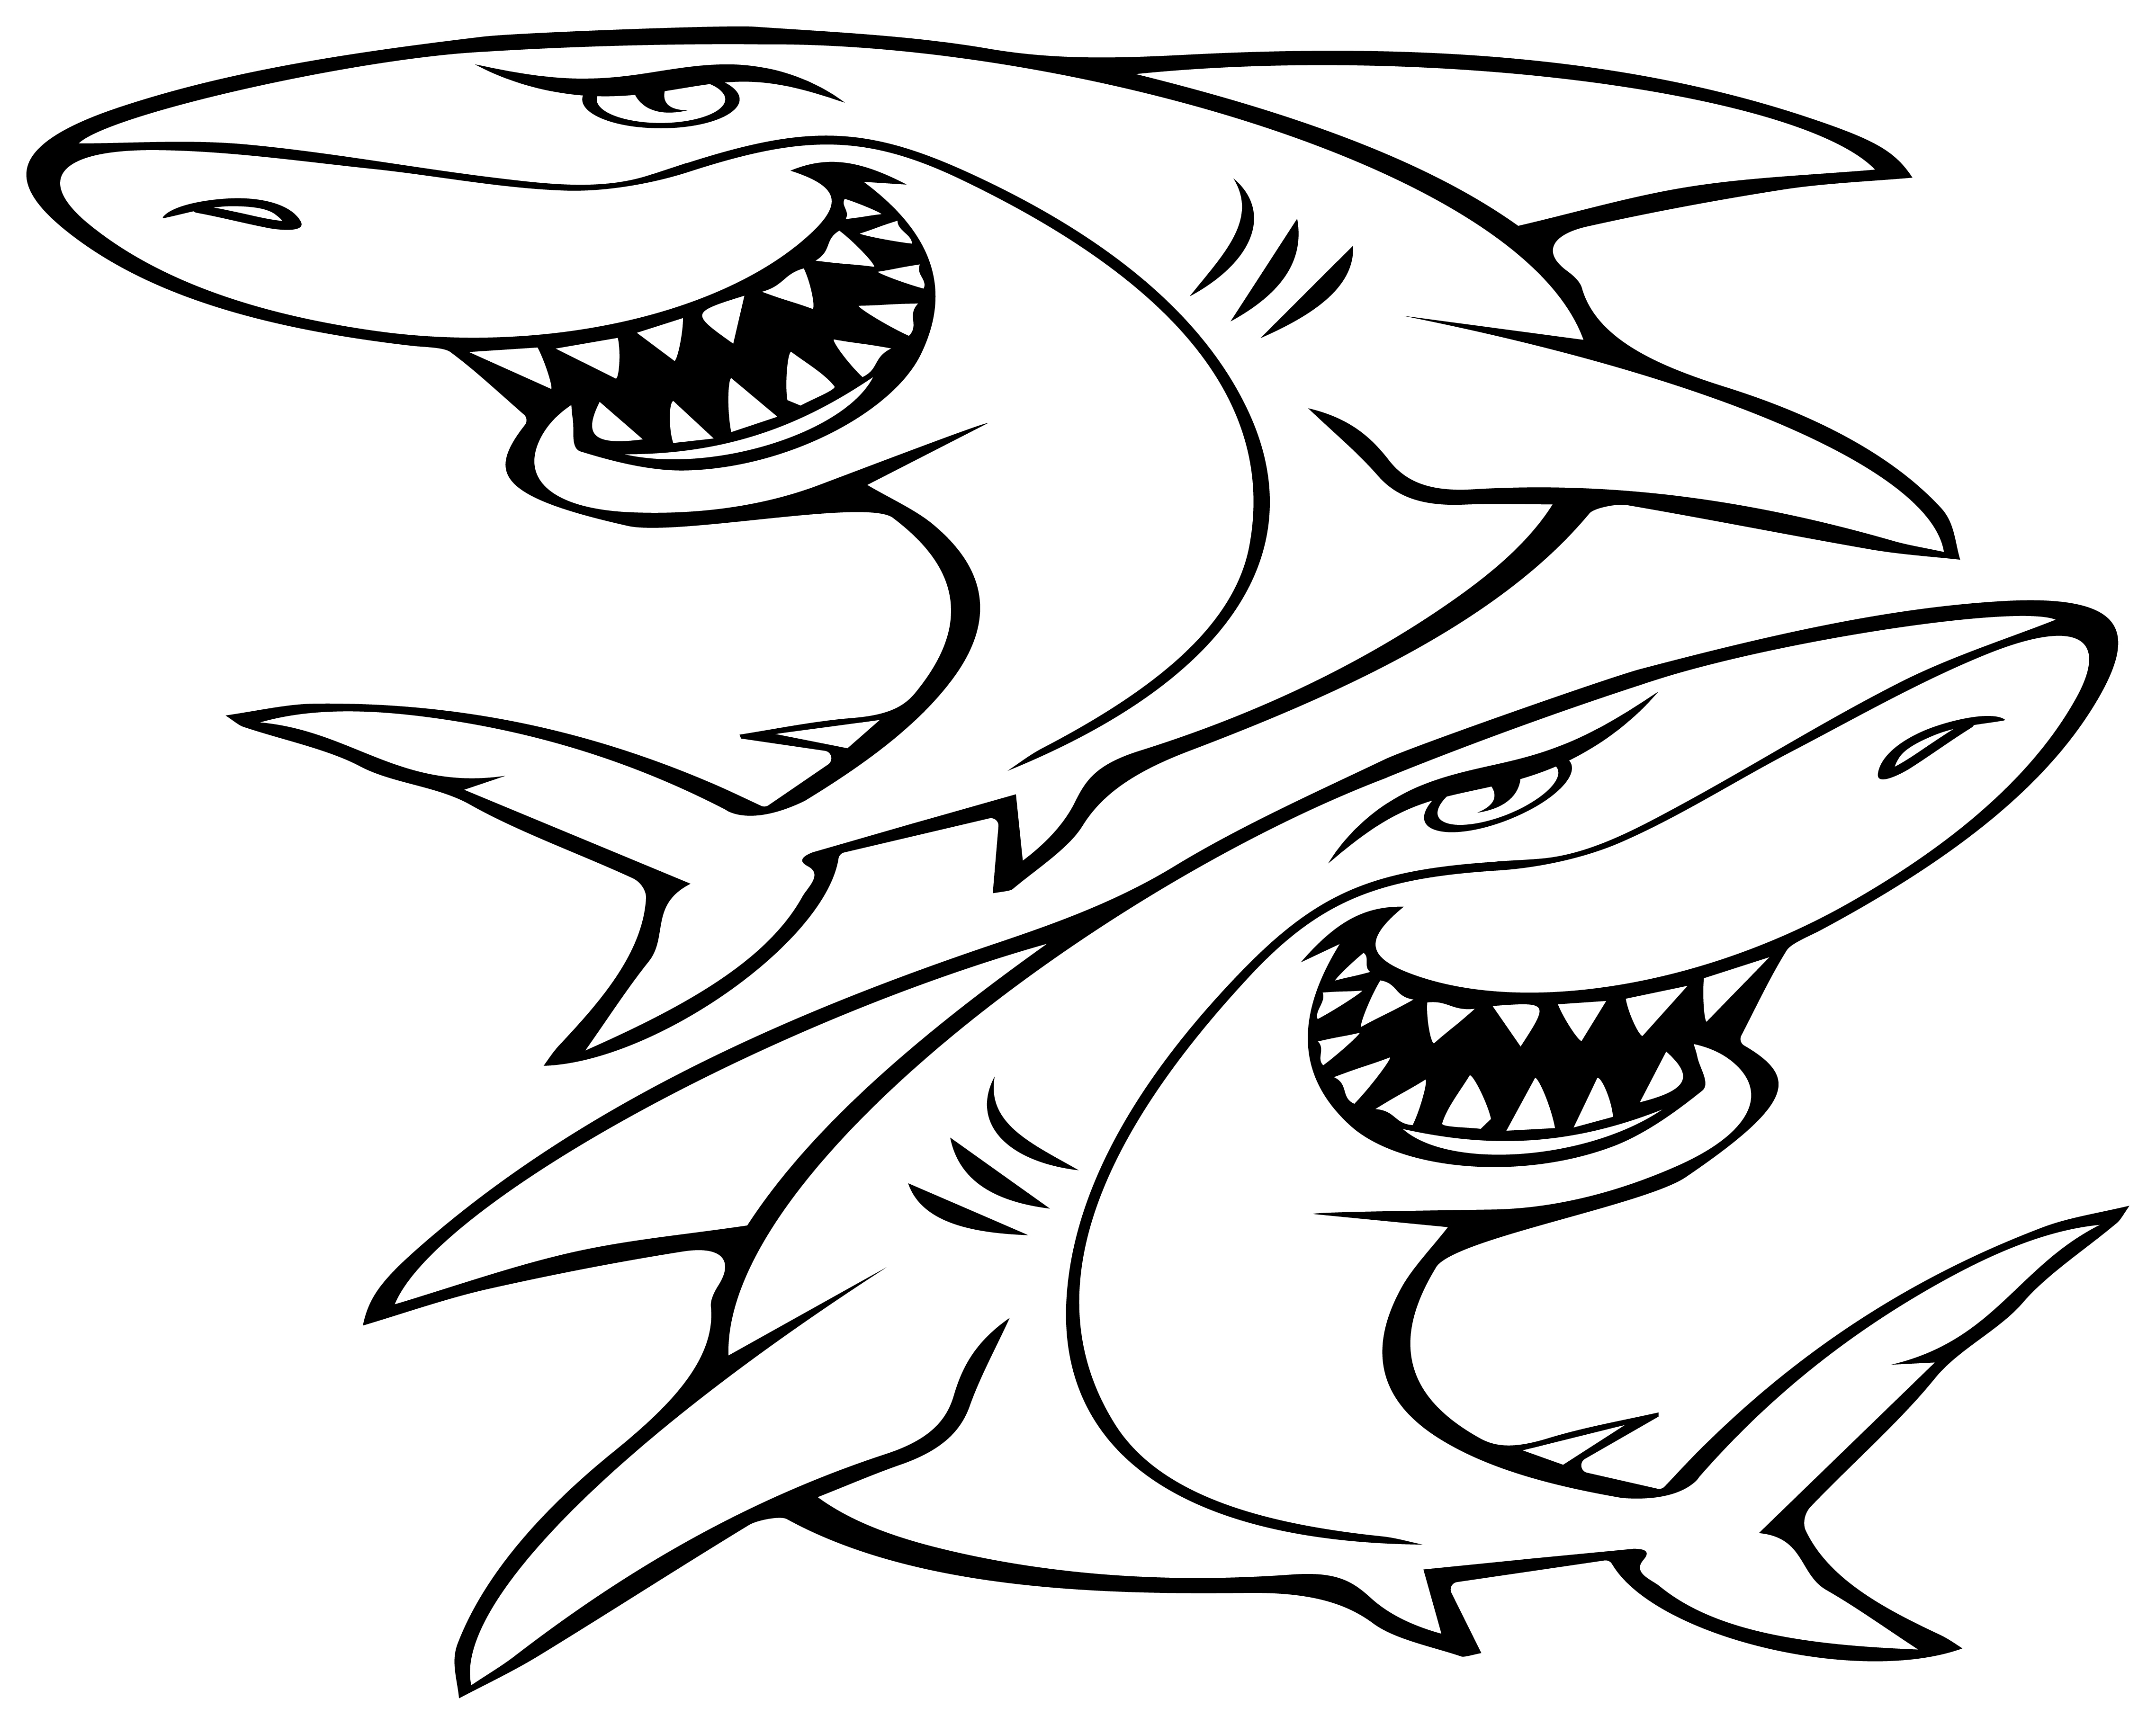 Aufkleber Shark Hai 60x50 cm für Auto KFZ Haifisch Sticker Wandtattoo